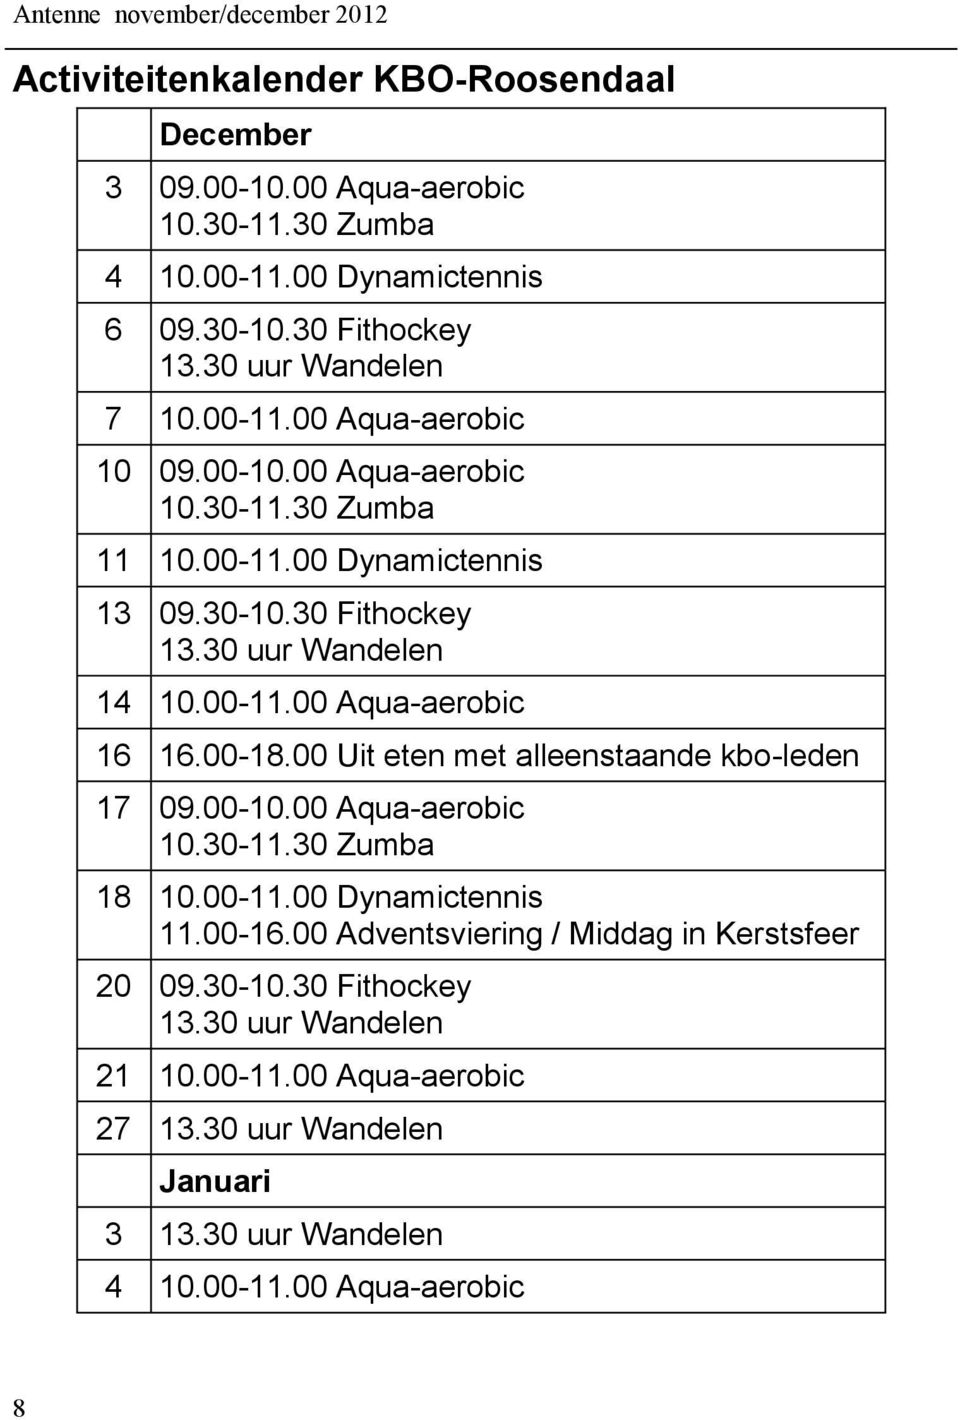 00-11.00 Aqua-aerobic 16 16.00-18.00 Uit eten met alleenstaande kbo-leden 17 09.00-10.00 Aqua-aerobic 10.30-11.30 Zumba 18 10.00-11.00 Dynamictennis 11.00-16.